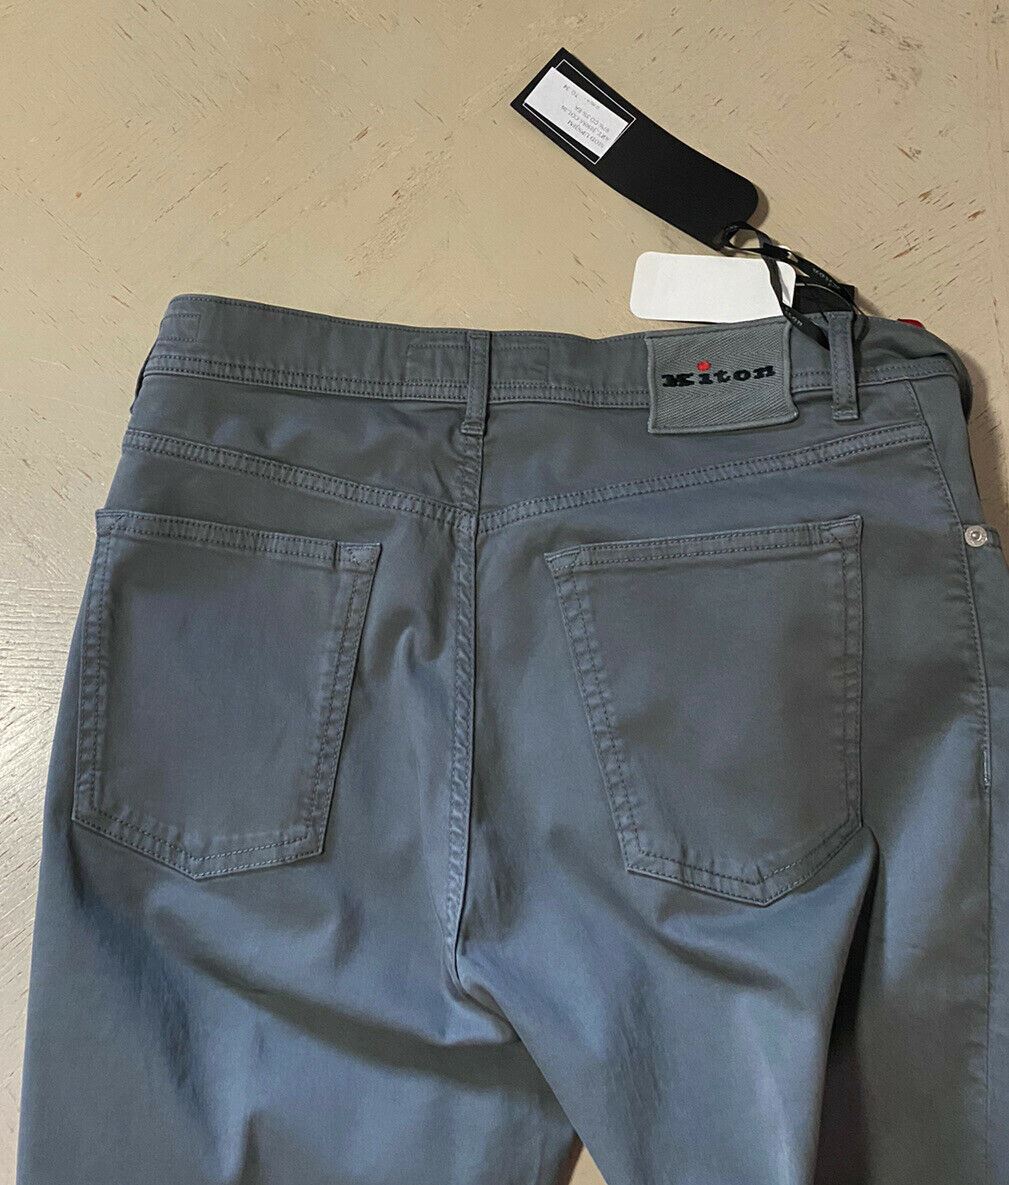 NWT $1102 Мужские зауженные джинсы Kiton серые 34 США (50 ЕС) Италия